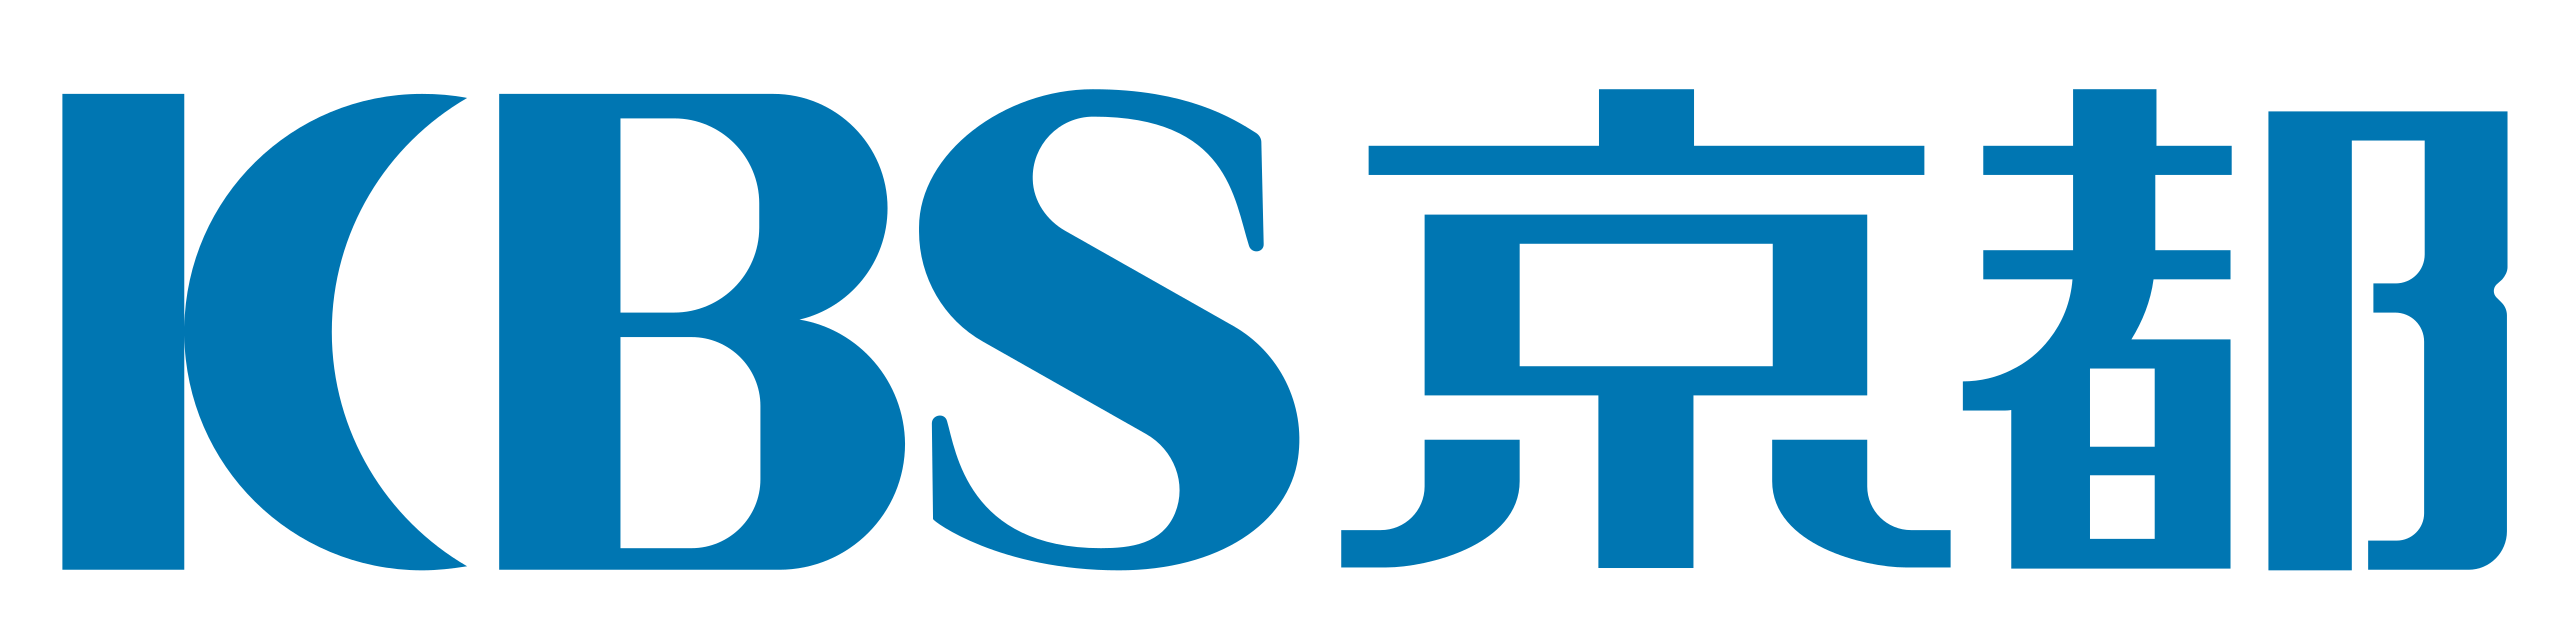 KBS three letter circle logo design vector template. monogram symbol on  black & white. Stock Vector | Adobe Stock